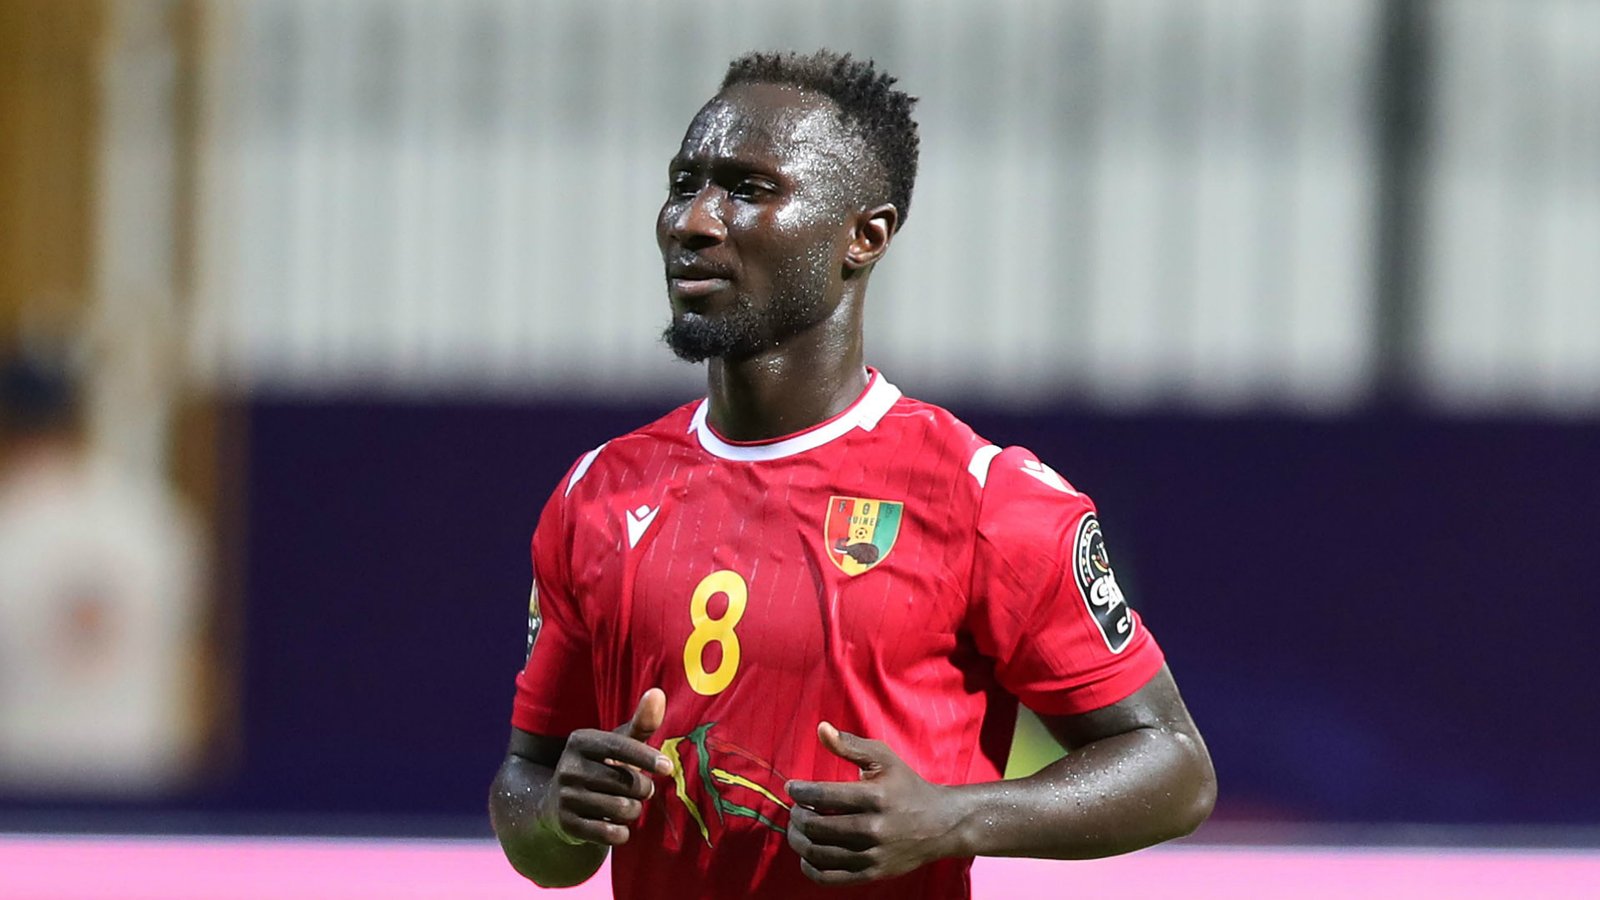 Burkina Faso, Guinea qualify for 2021 AFCON tournament